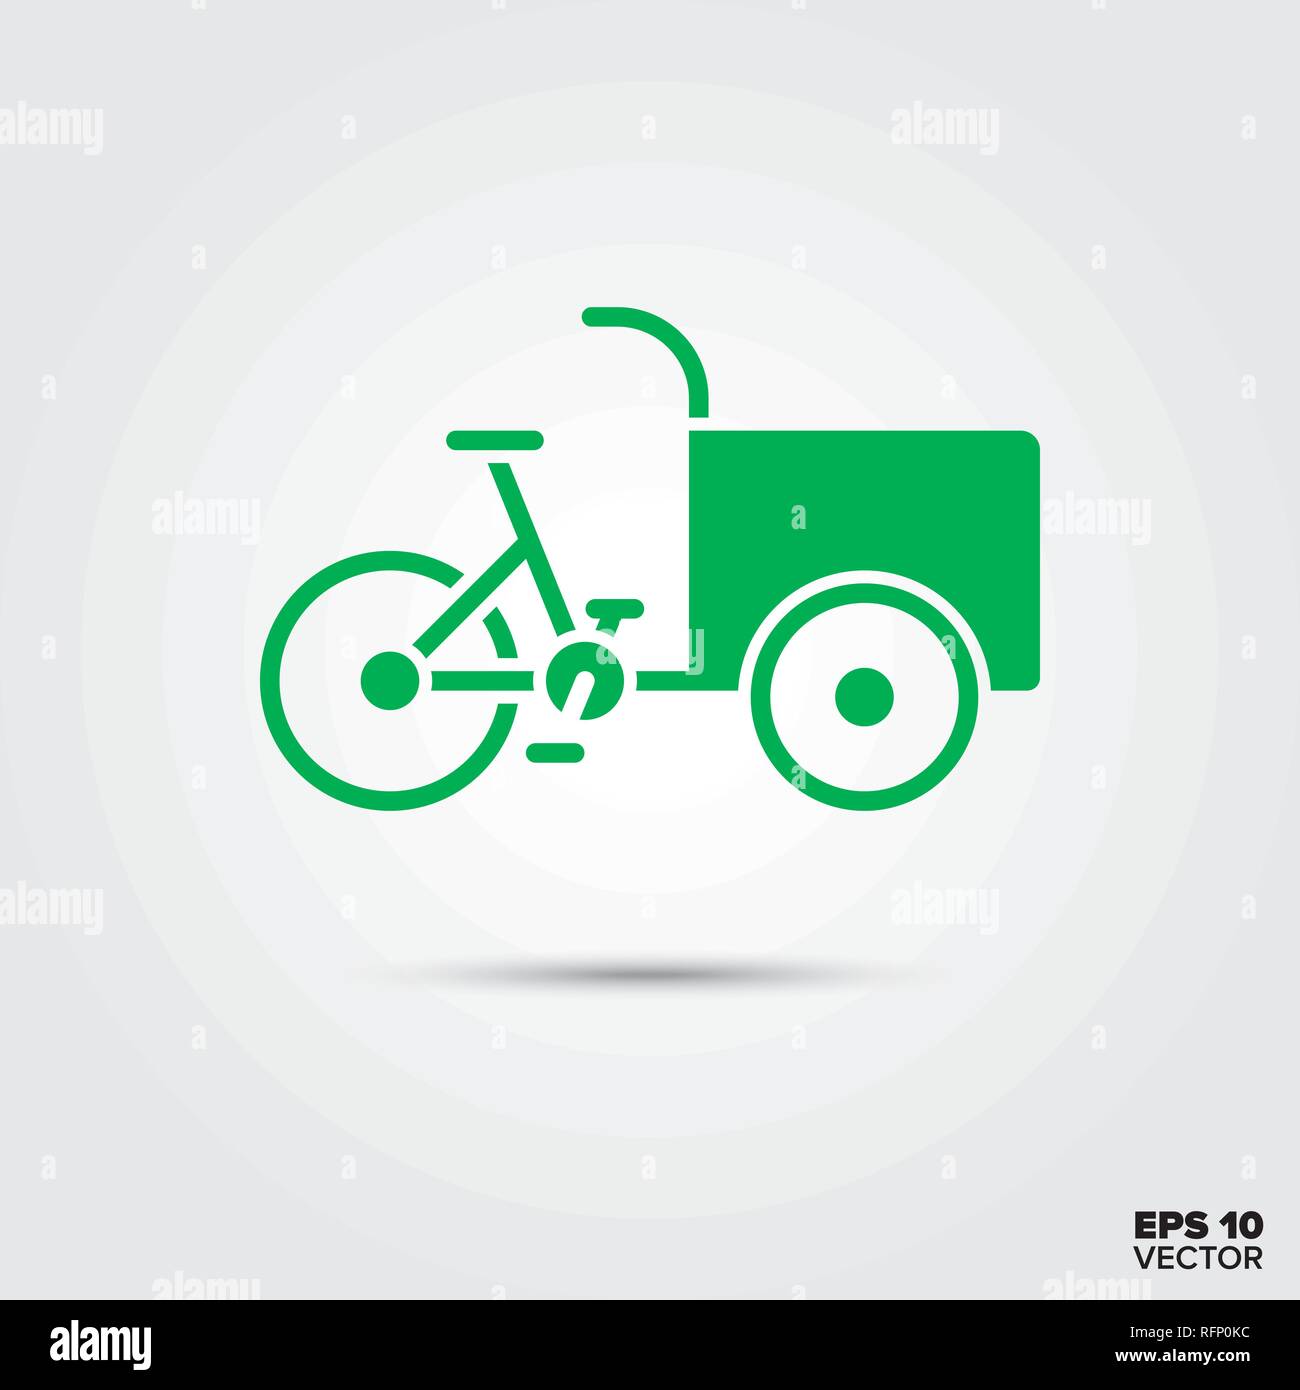 Icône Cargobike, véhicule de livraison durable respectueux de l'environnement, symbole des transports. Vecteur EPS 10. Illustration de Vecteur